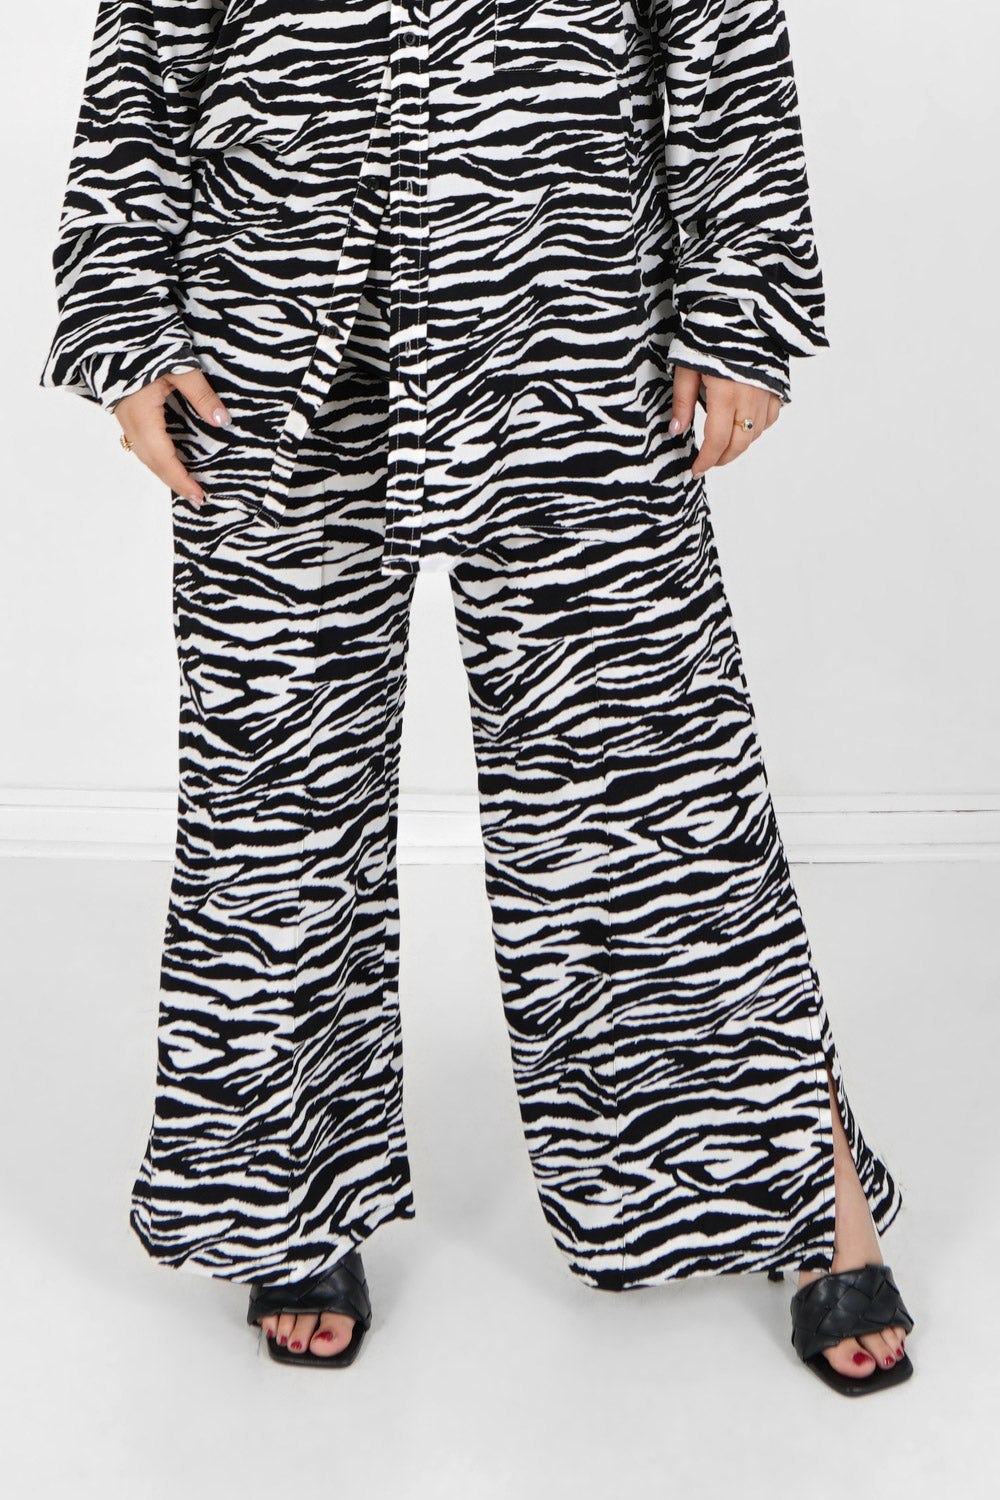 Zebra wide leg pants Black